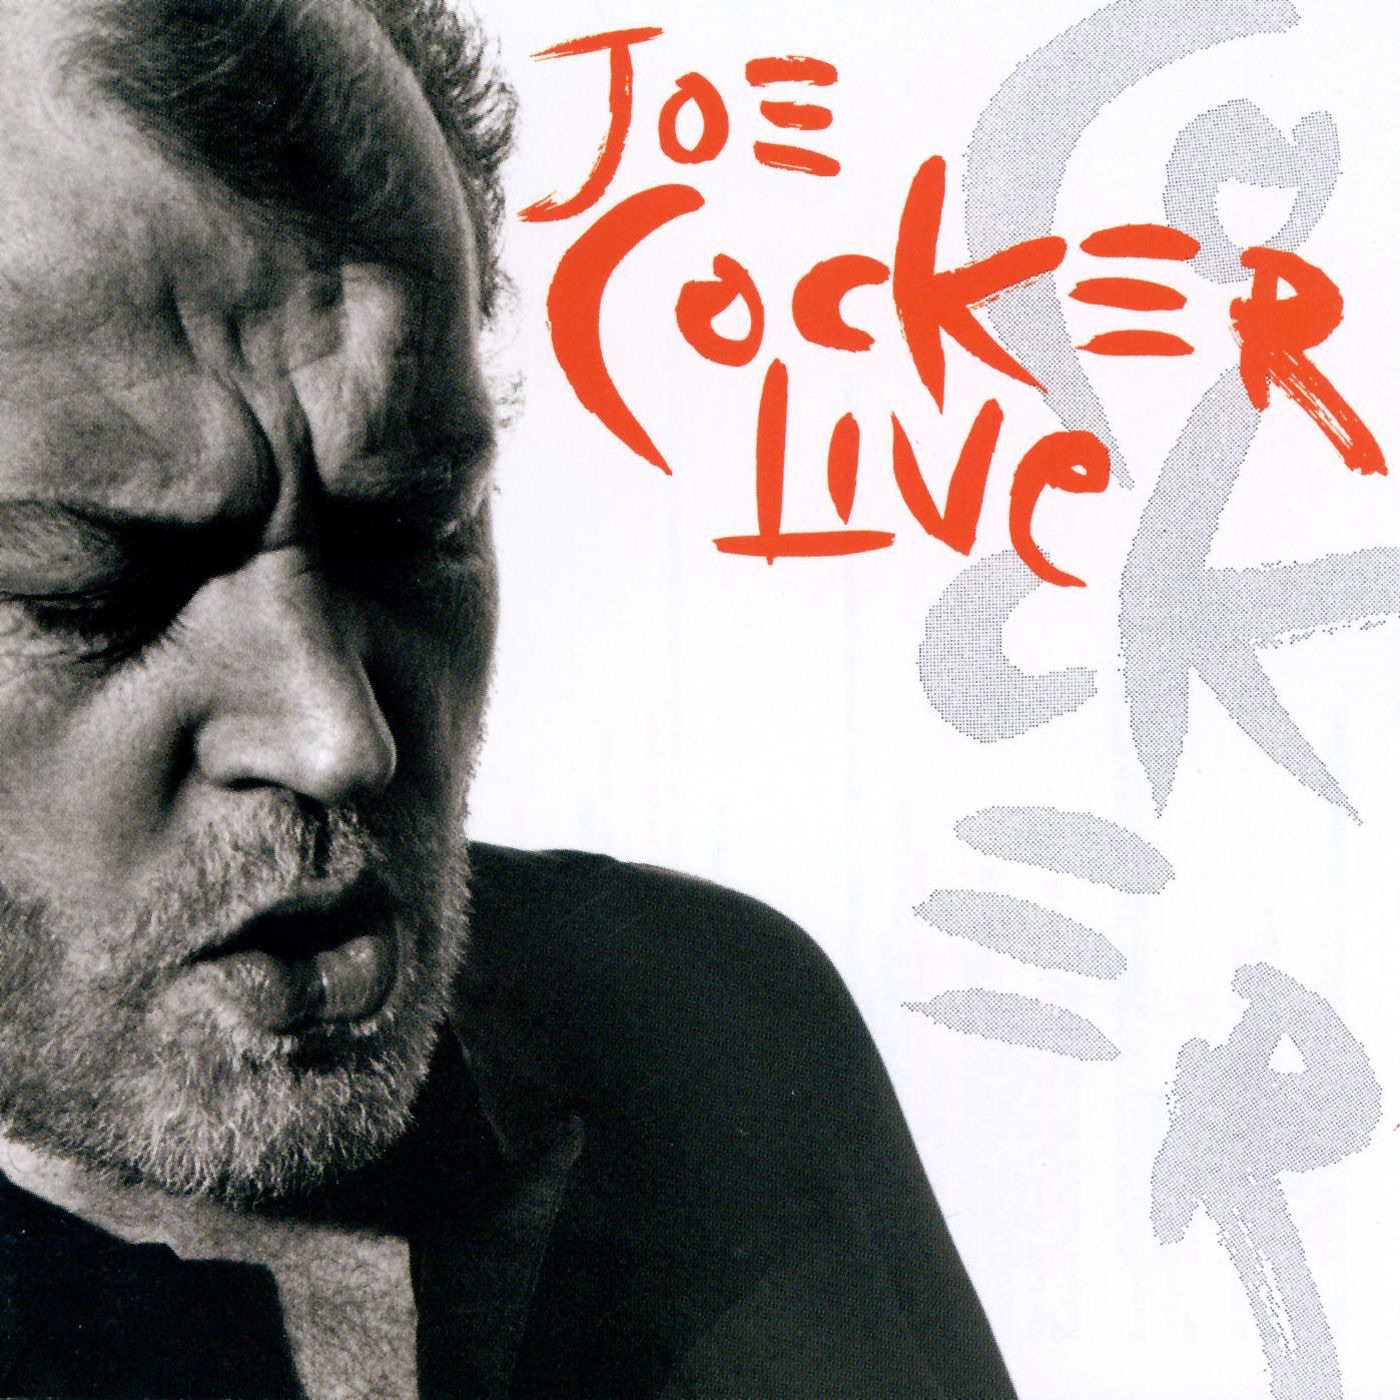 Live by Joe Cocker